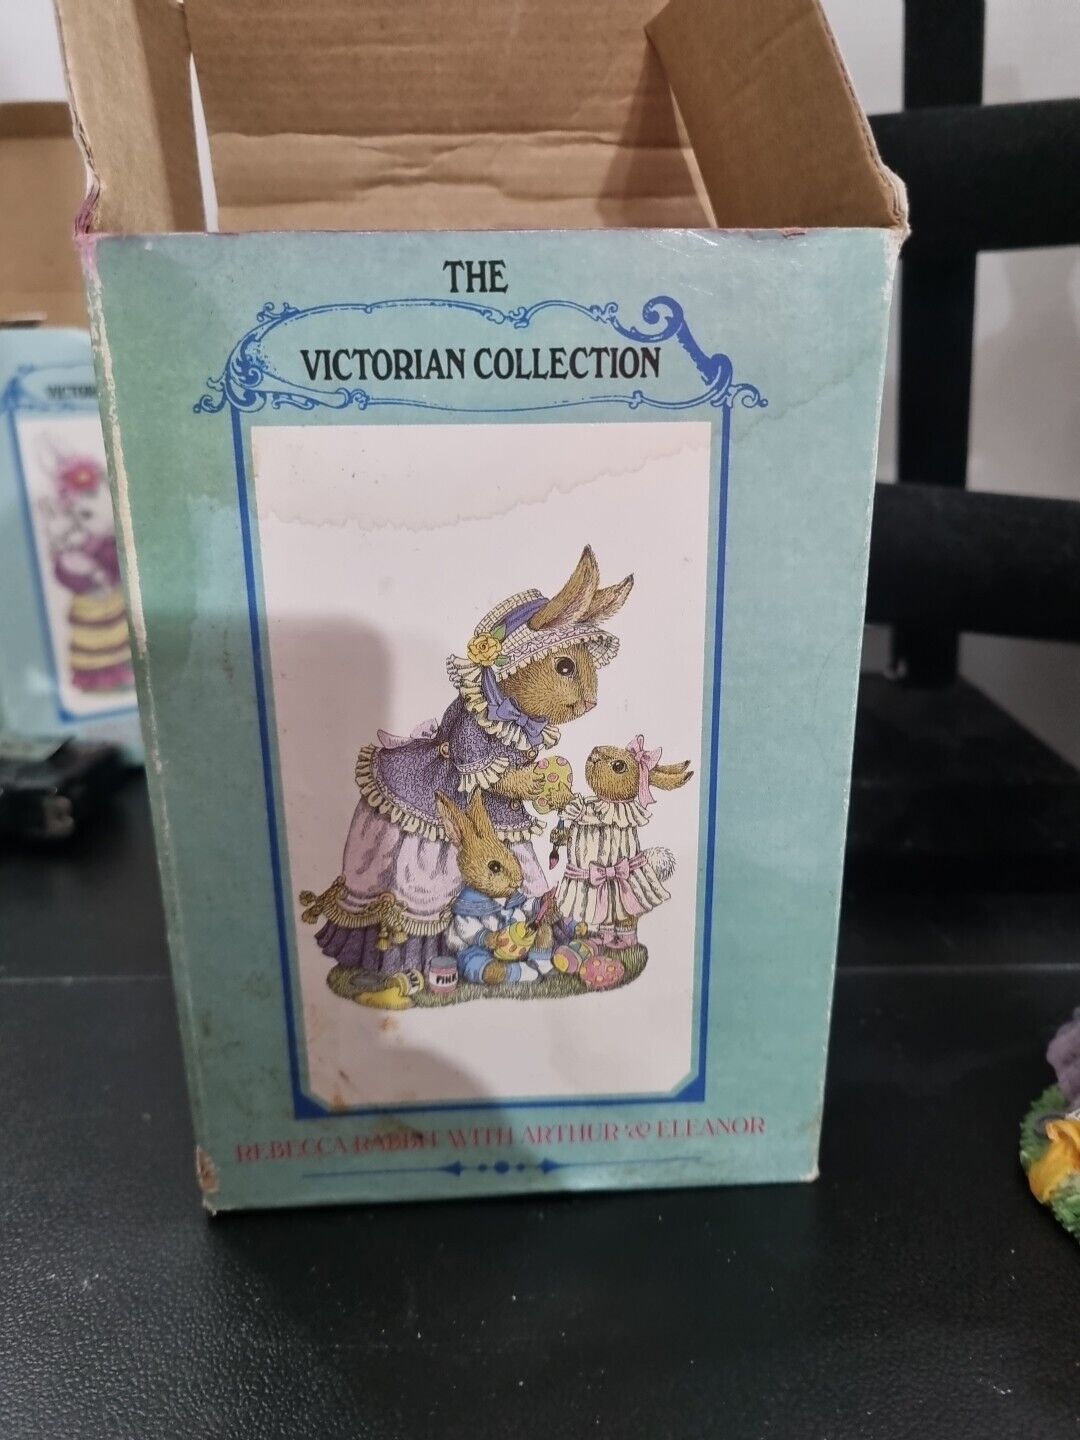 The Victorian Collection Rebecca Rabbit With Arthur & Eleanor 1995 Figurine VA34